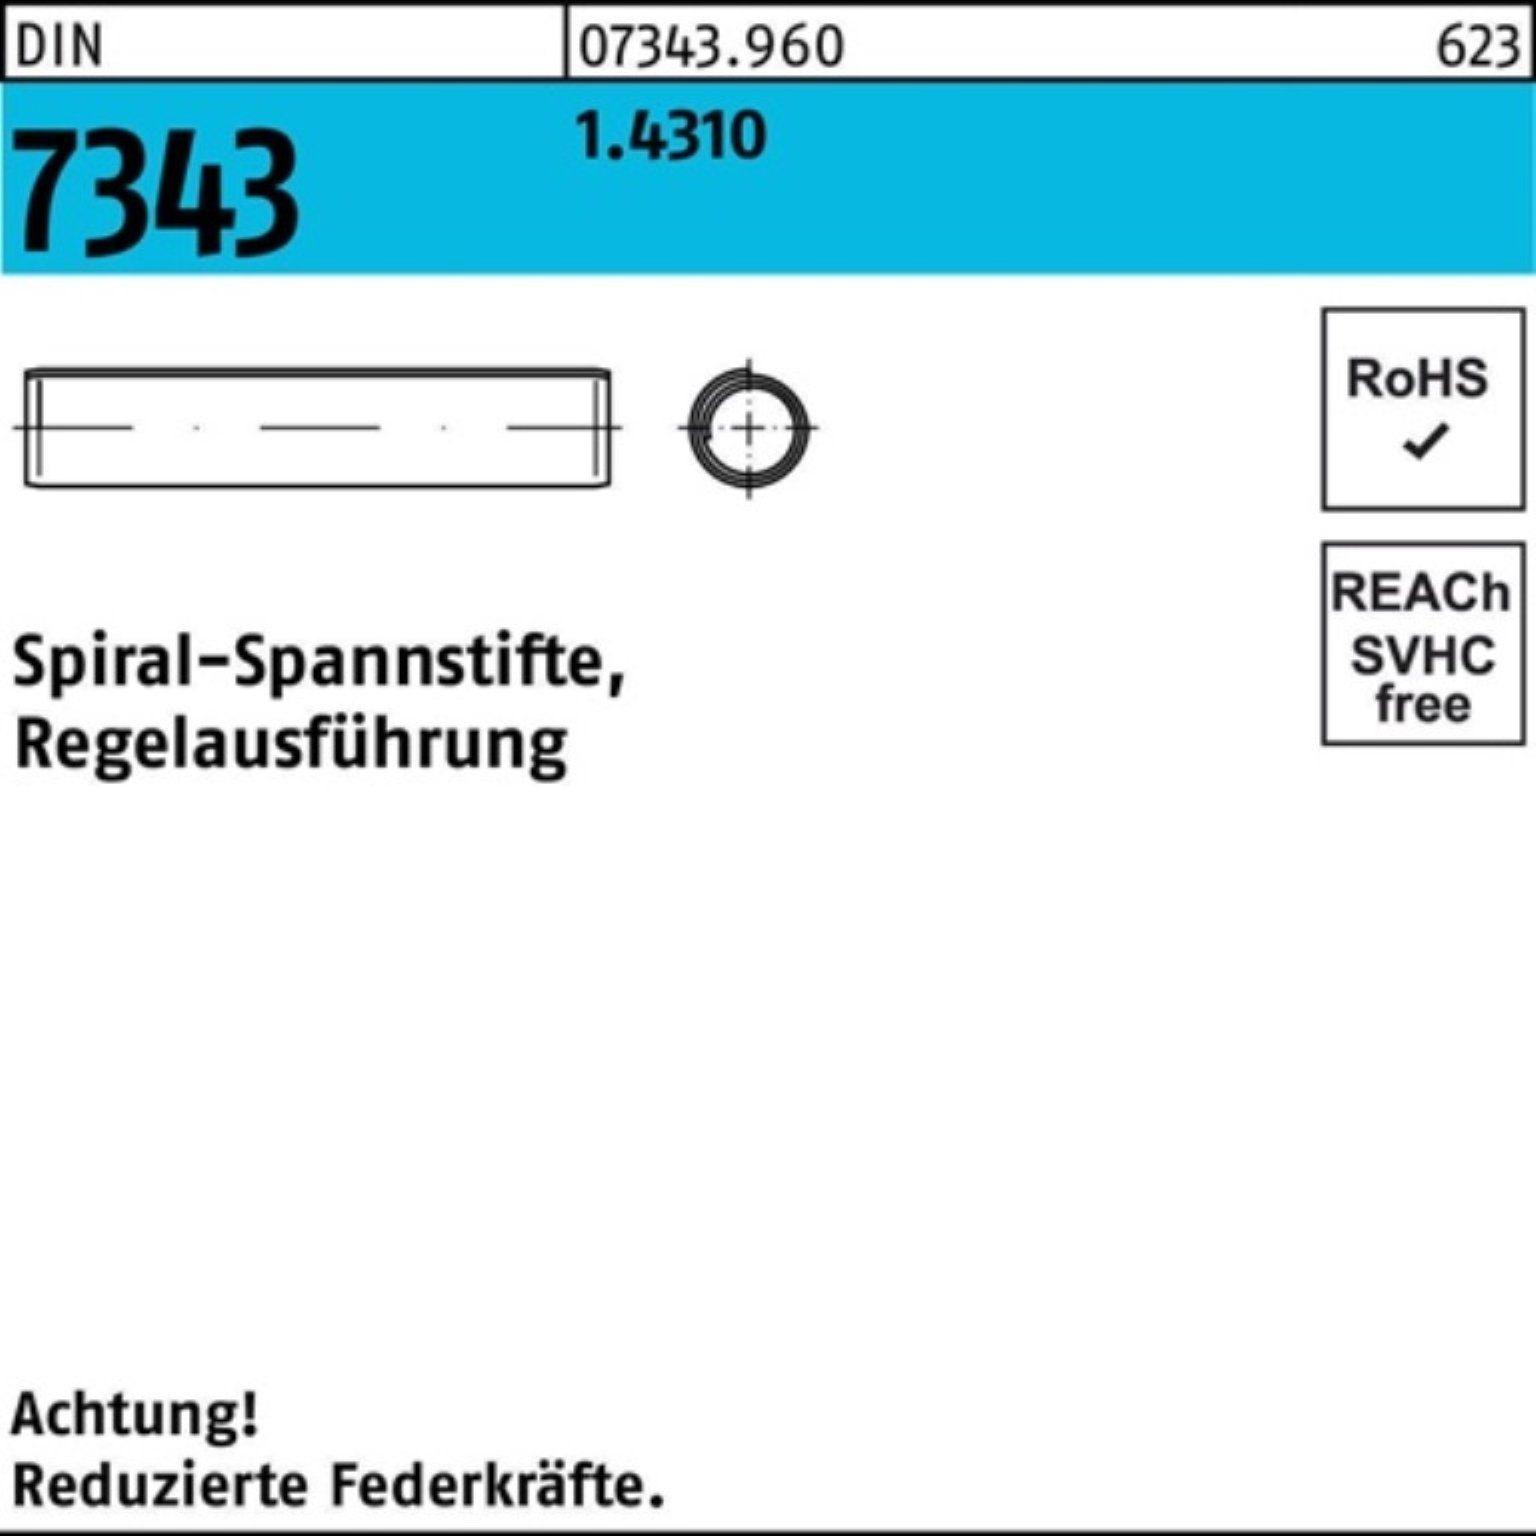 Reyher Spannstift 500er Pack DIN 1.4310 4x 7343/ISO Regelausf. 8750 Spiralspannstift 40